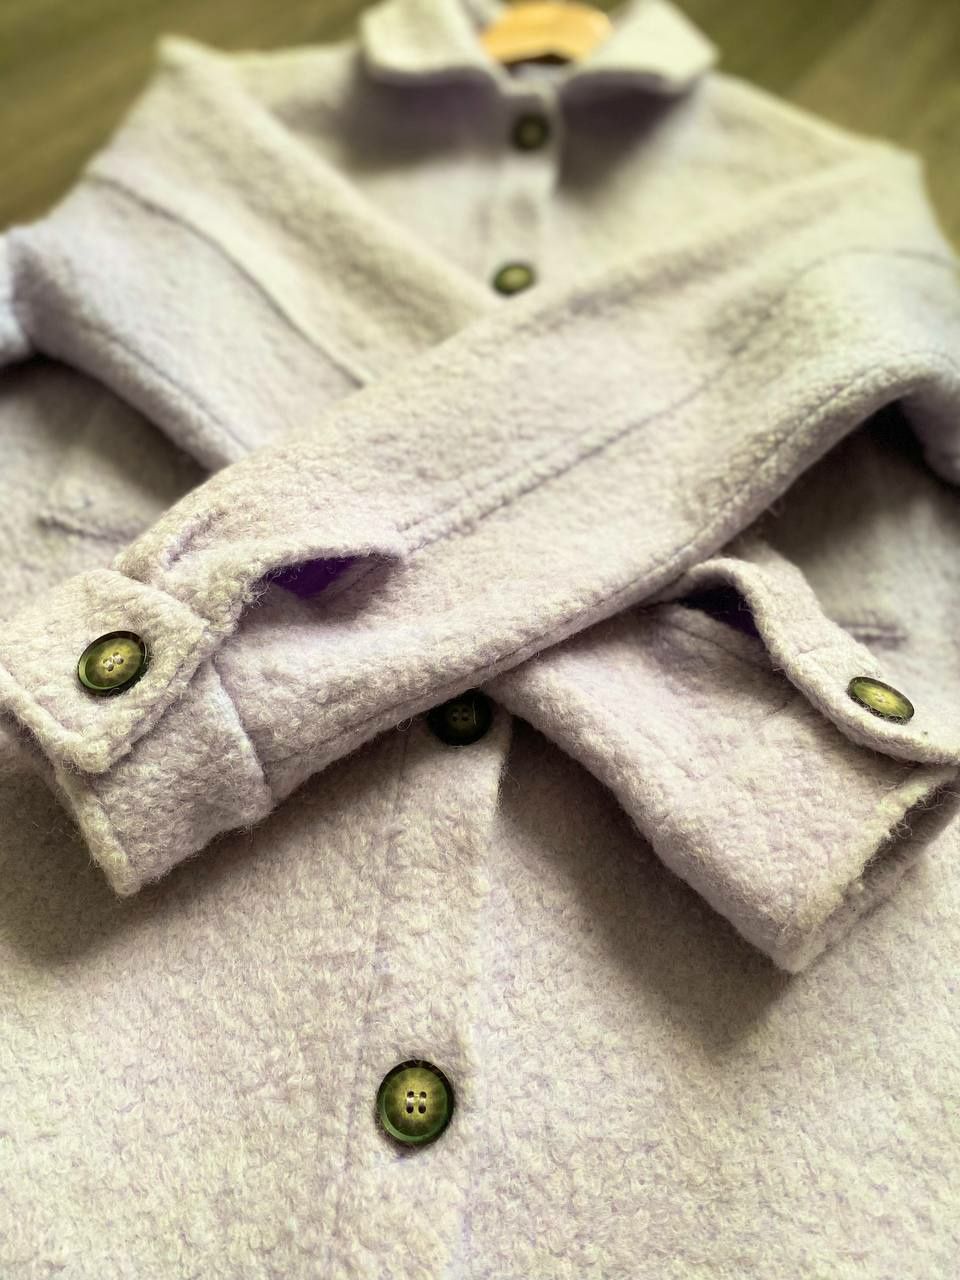 Трендове пальто куртка-сорочка бузкового кольору із вовни L, 46-48